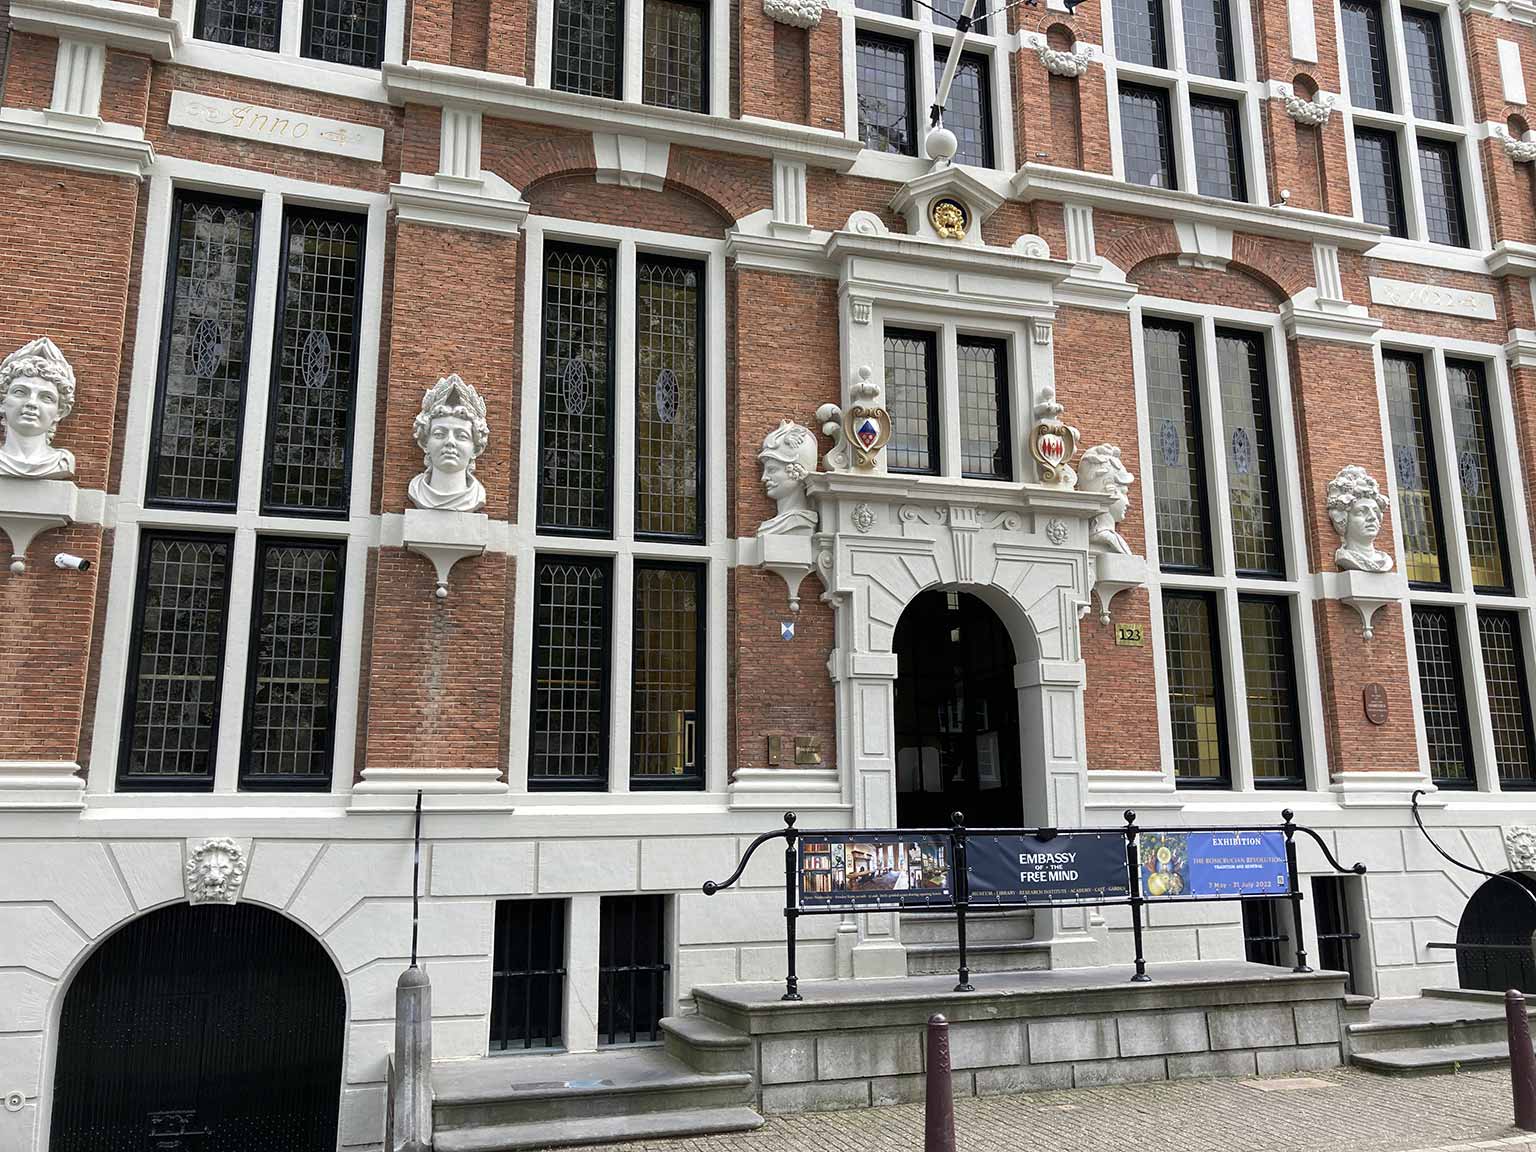 Front of the Huis met de Hoofden, Amsterdam, with main entrance